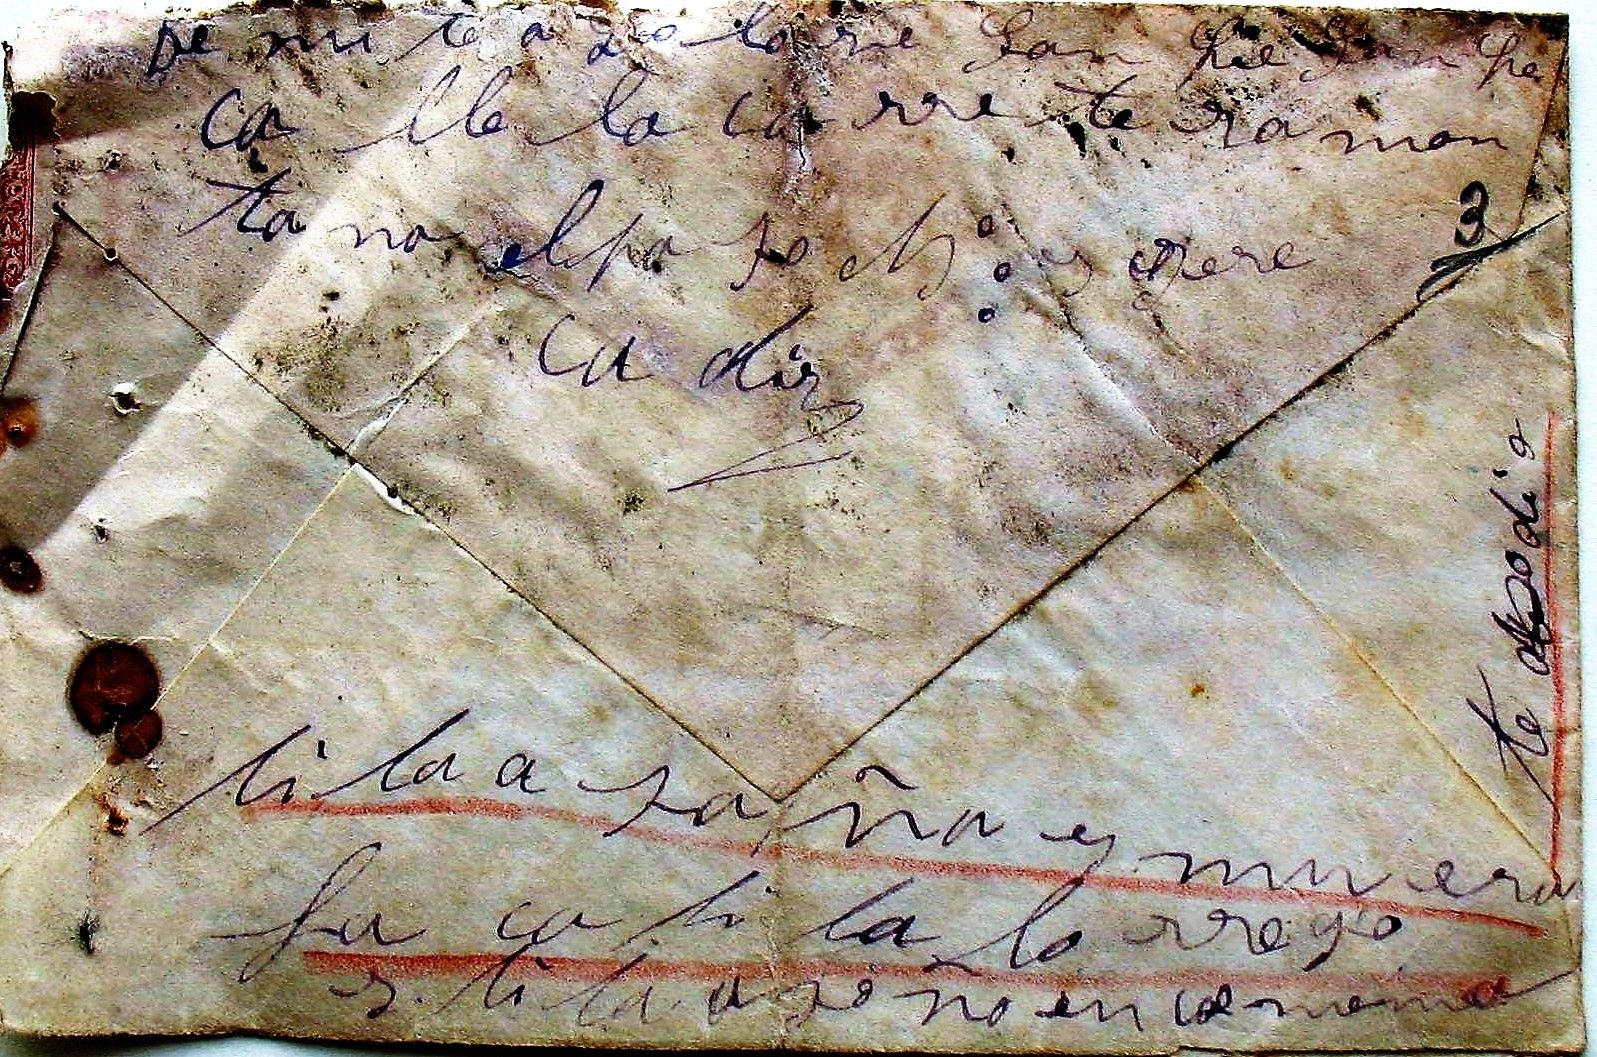 La carta por la que encausaron a Dolores.